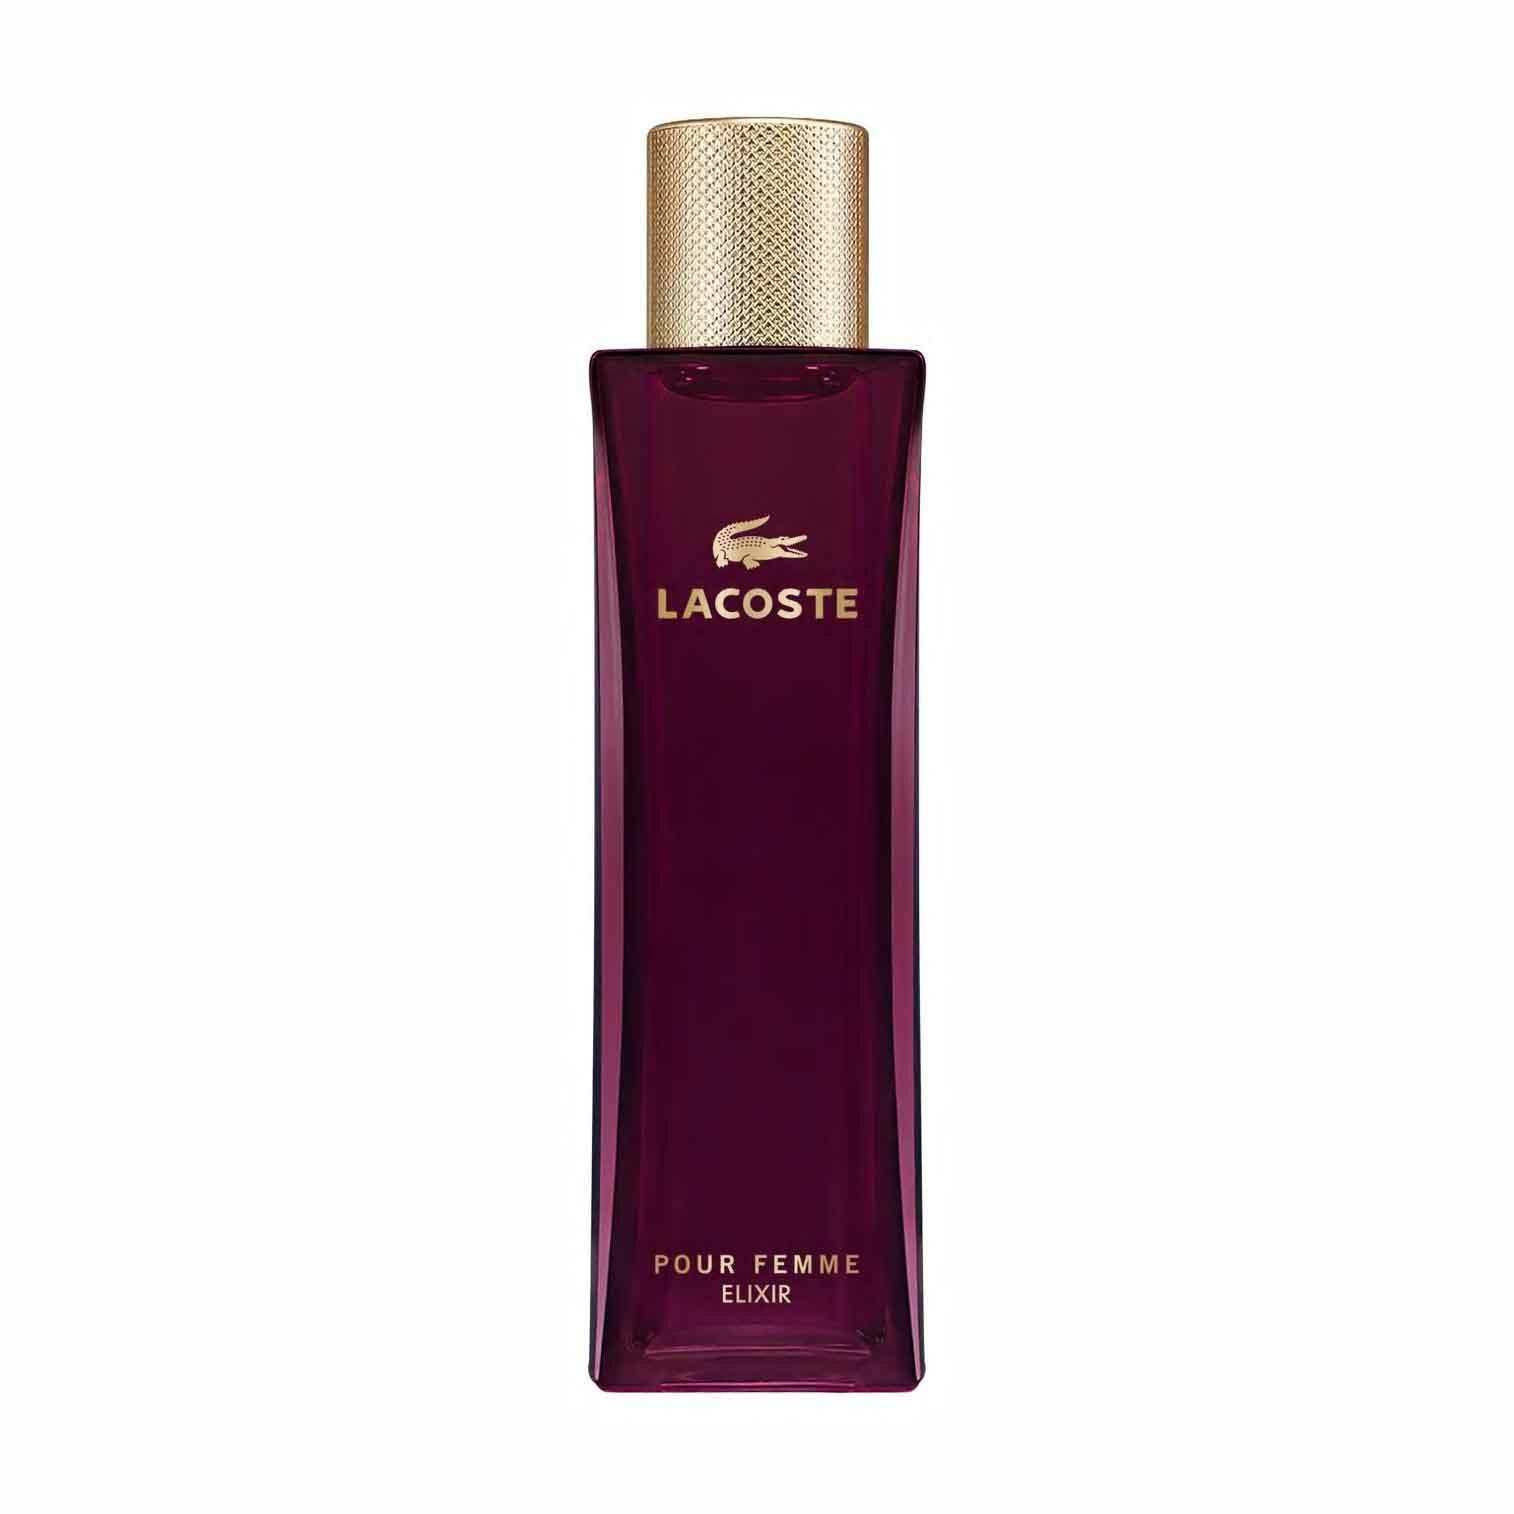 Lacoste Elixir for Women - 50ML